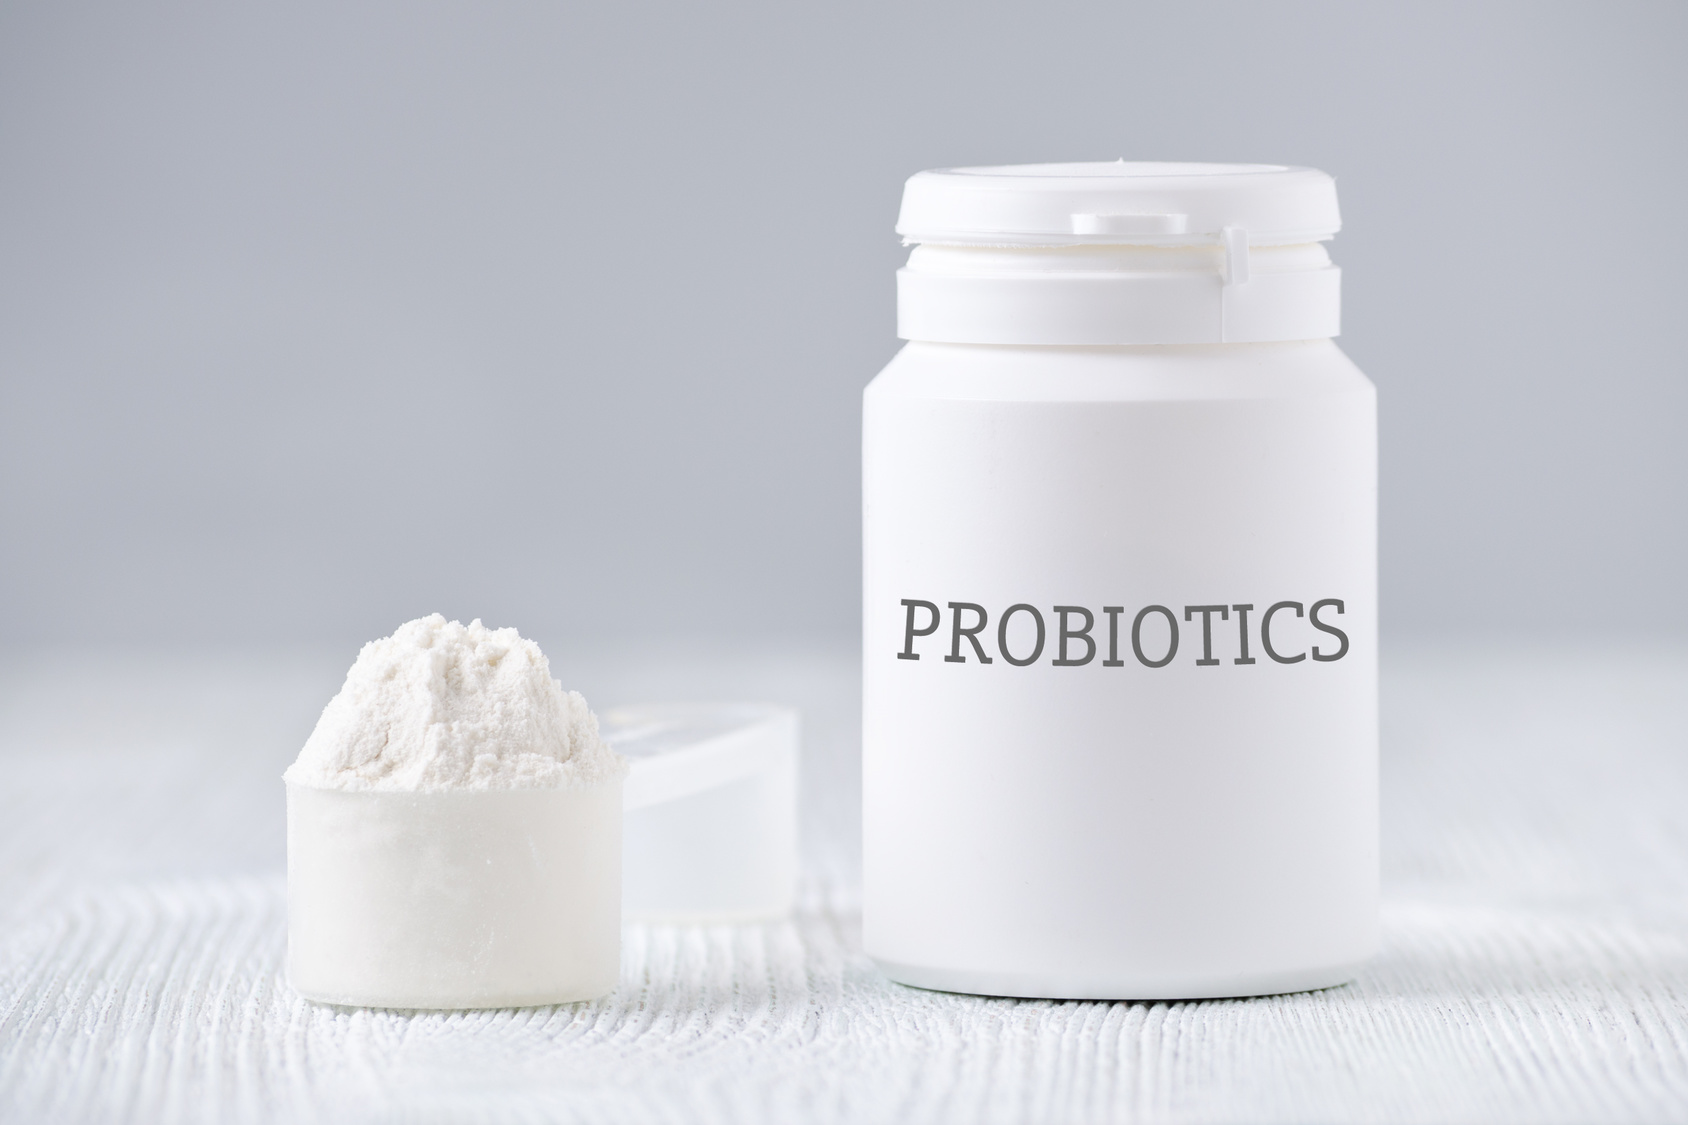 Пробиотики - это живые бактериальные культуры, которые необходимы для правильного функционирования кишечника и всего организма